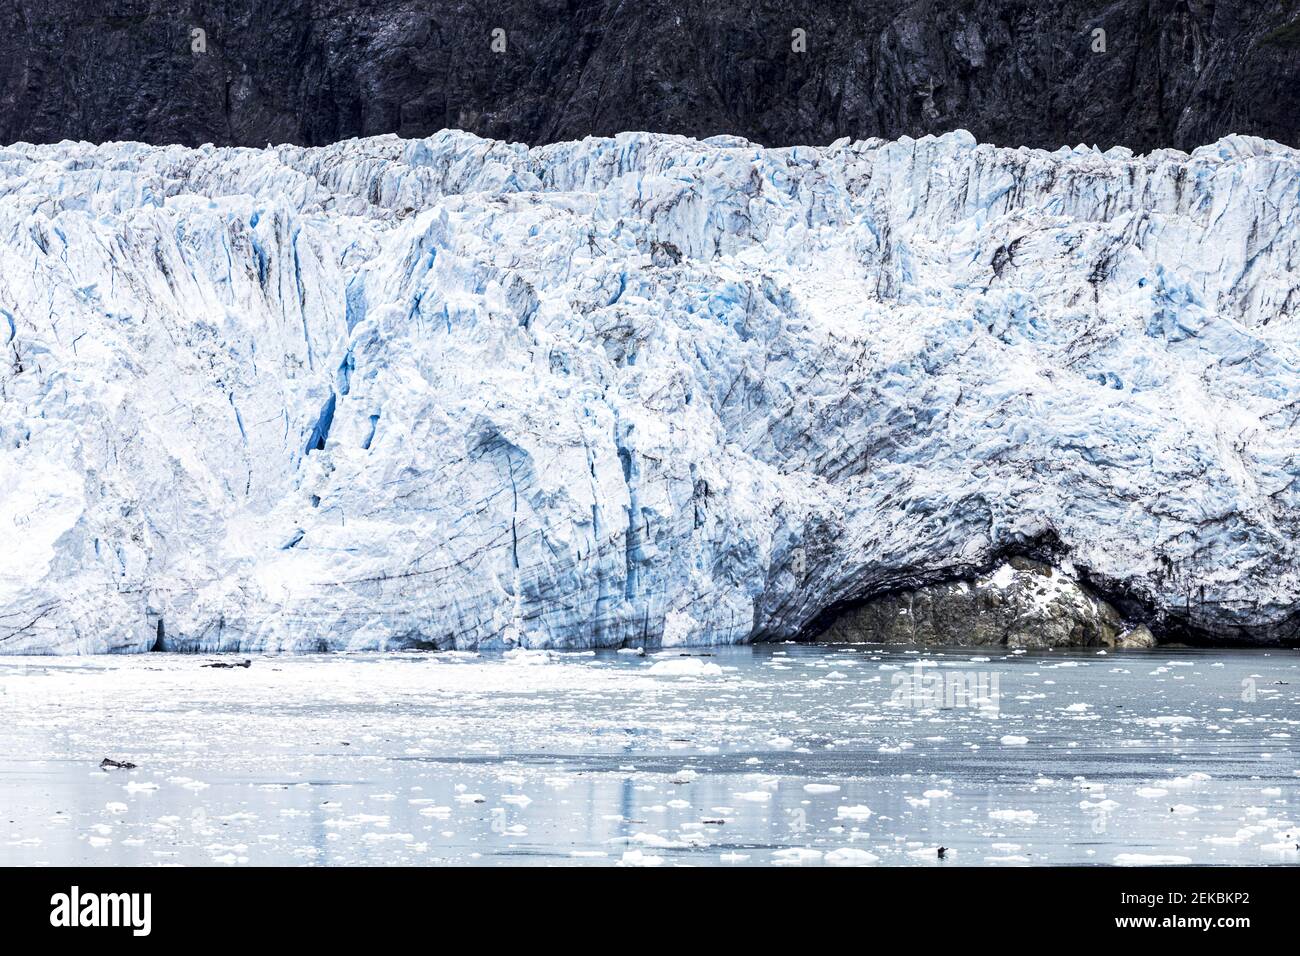 La faccia rotta del ghiacciaio Margerie nell'insenatura di Tarr di Glacier Bay, Alaska, USA - a dimostrazione dell'erosione di una roccia sottostante. Foto Stock